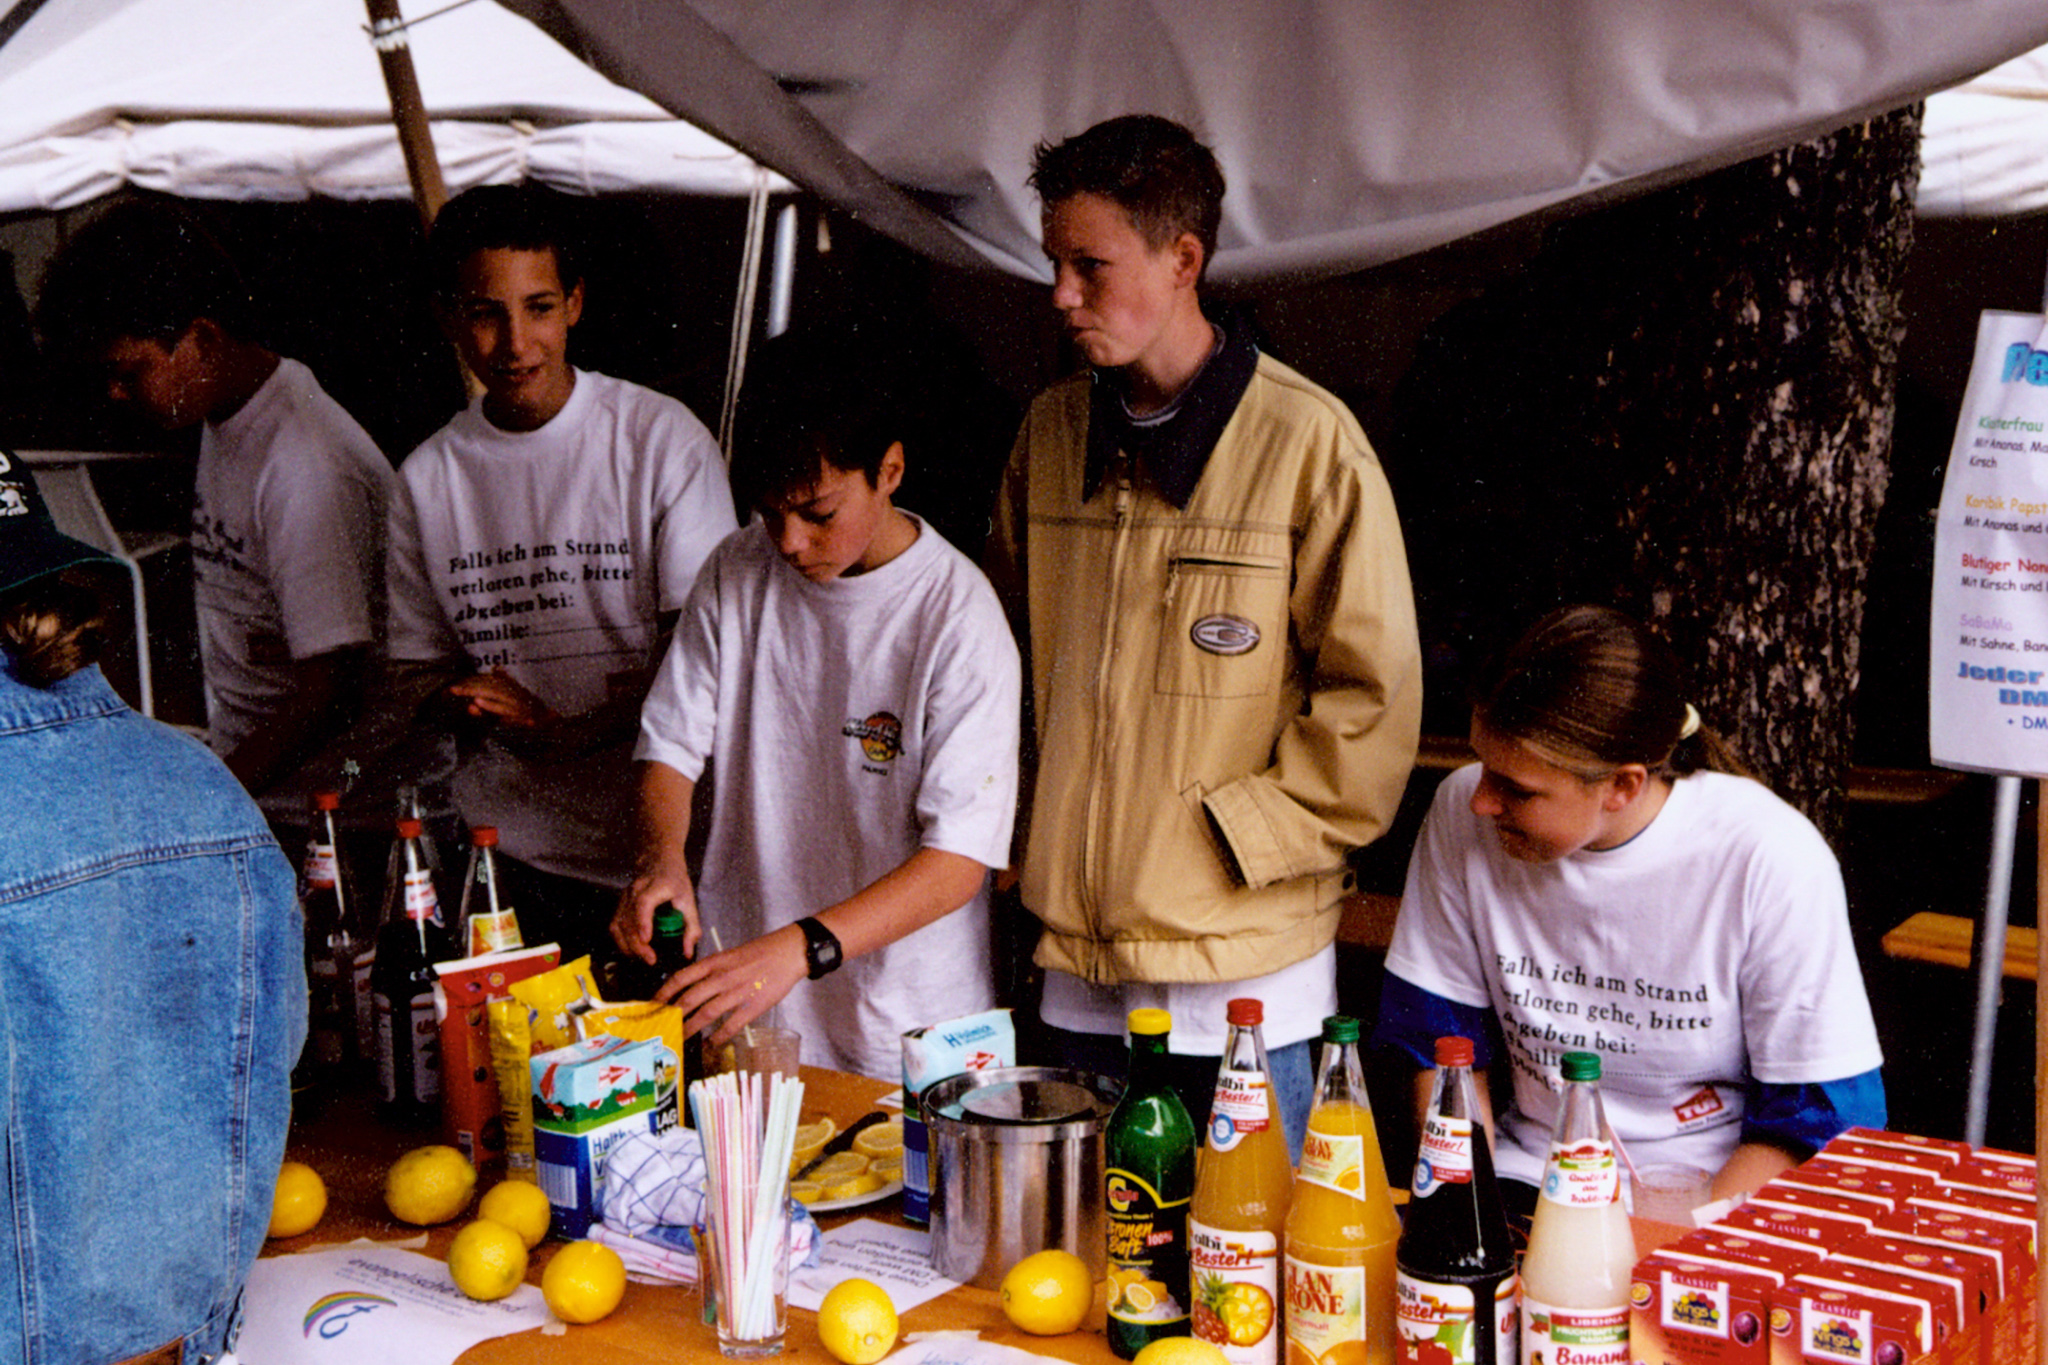 2. Kirchhorster Zehntfest 1999